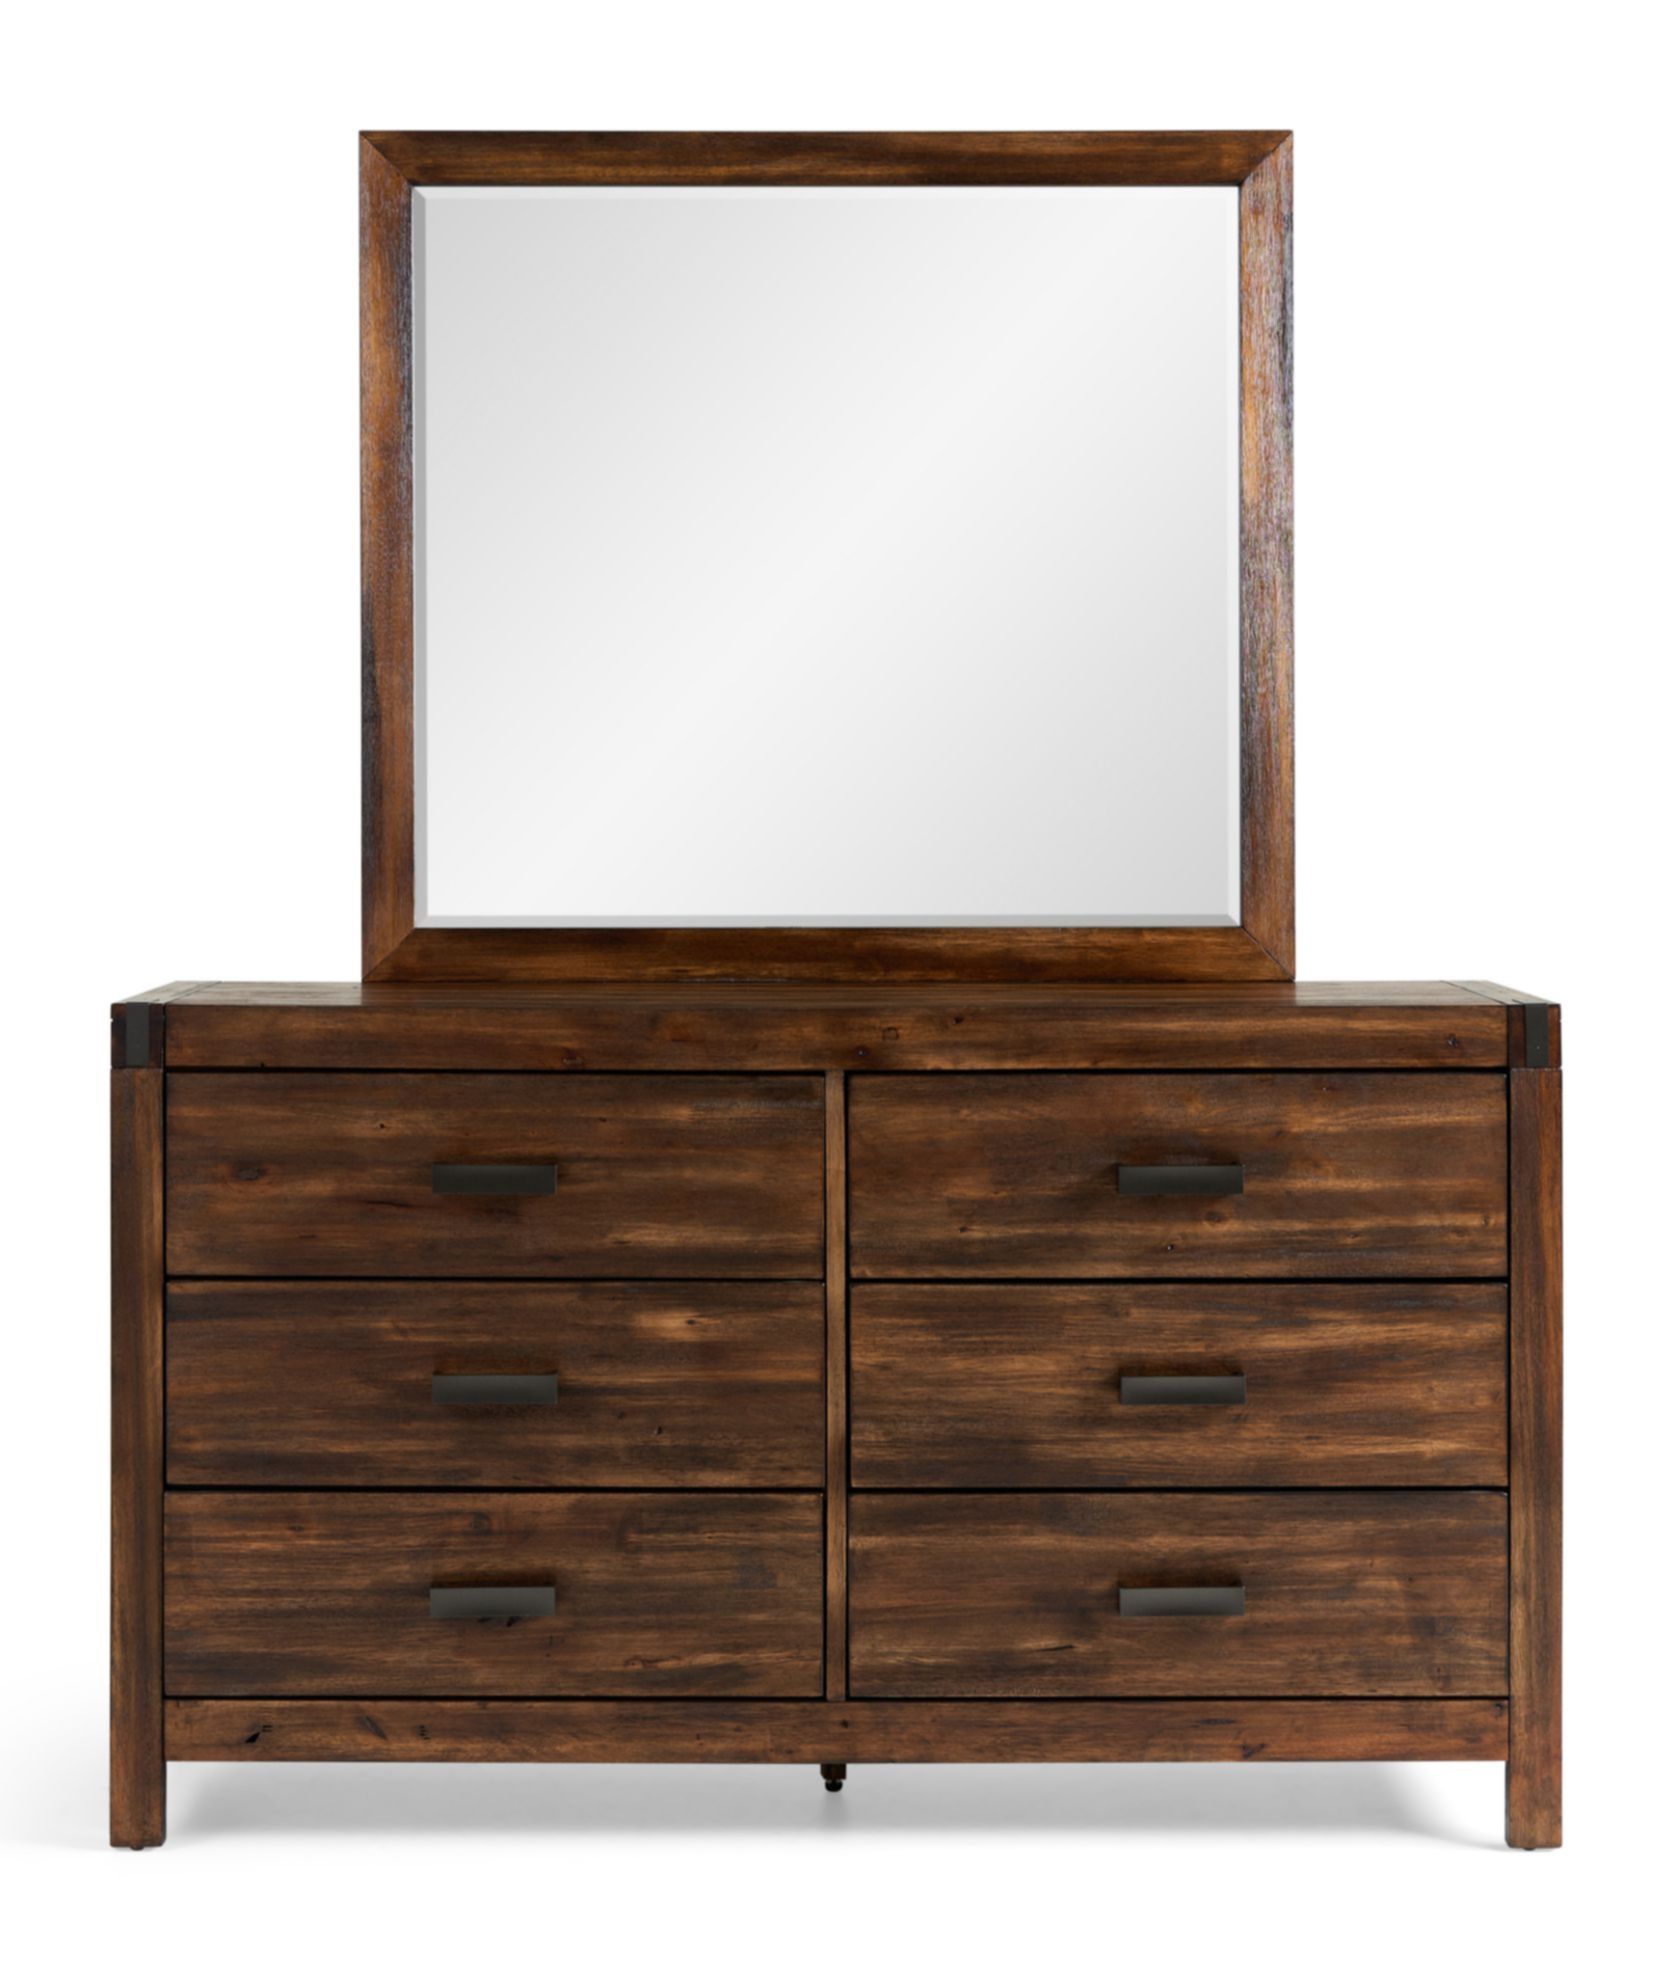 Picture of Warner Chestnut Dresser and Mirror